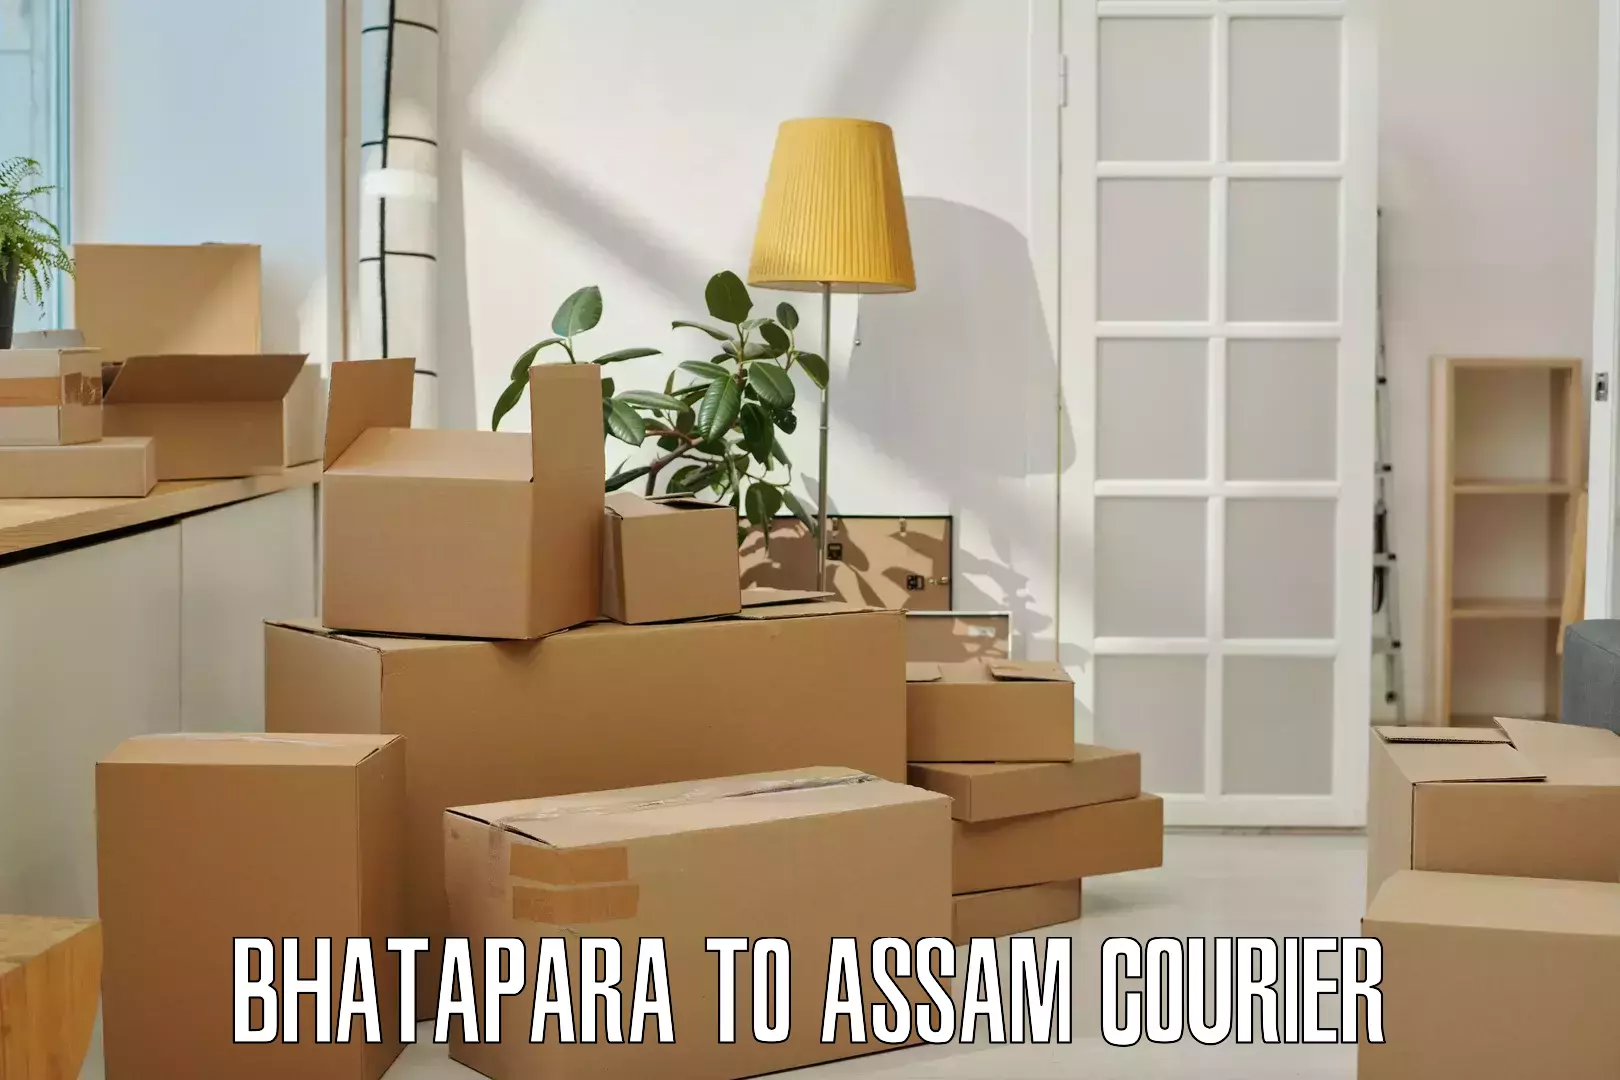 Express courier capabilities Bhatapara to Sivasagar